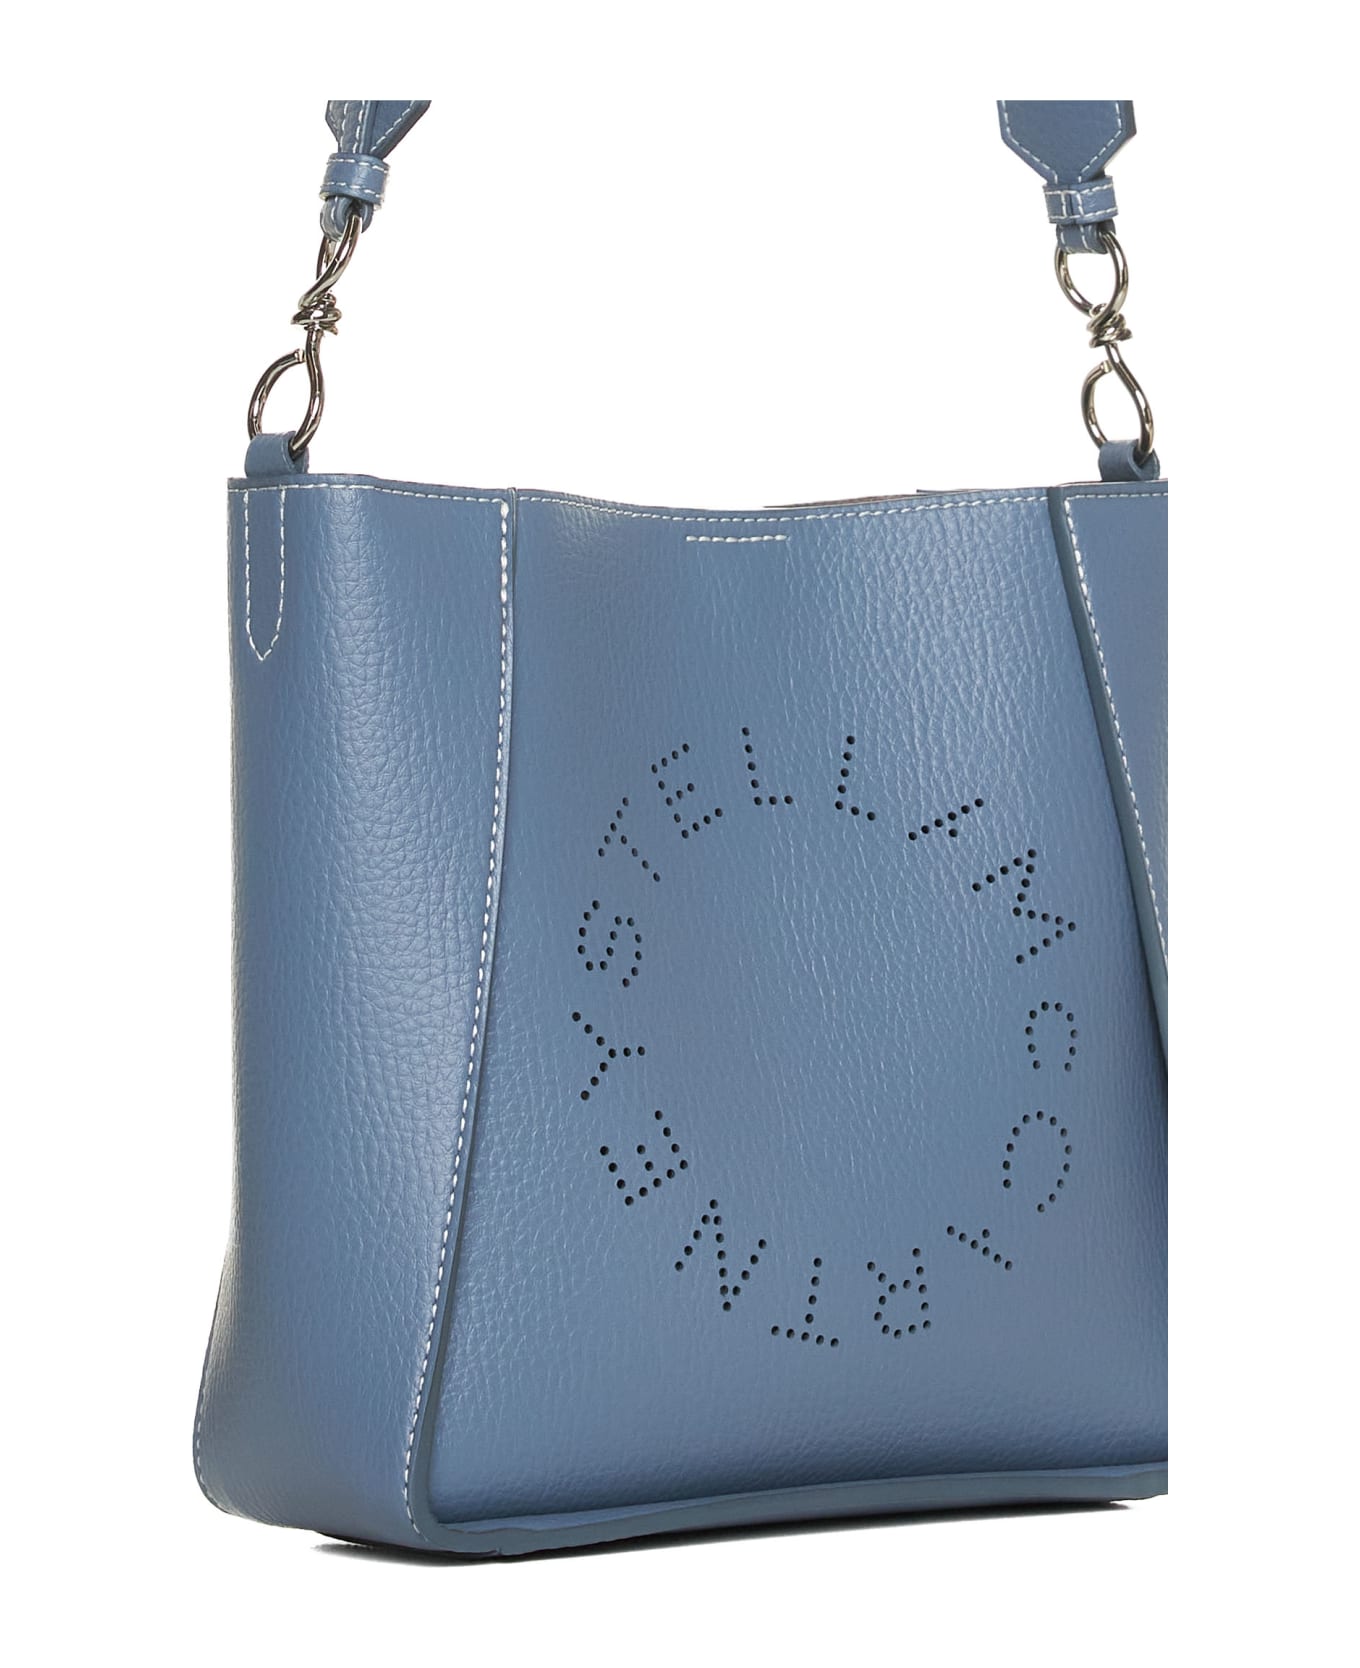 Stella McCartney Shoulder Bag - Blue grey